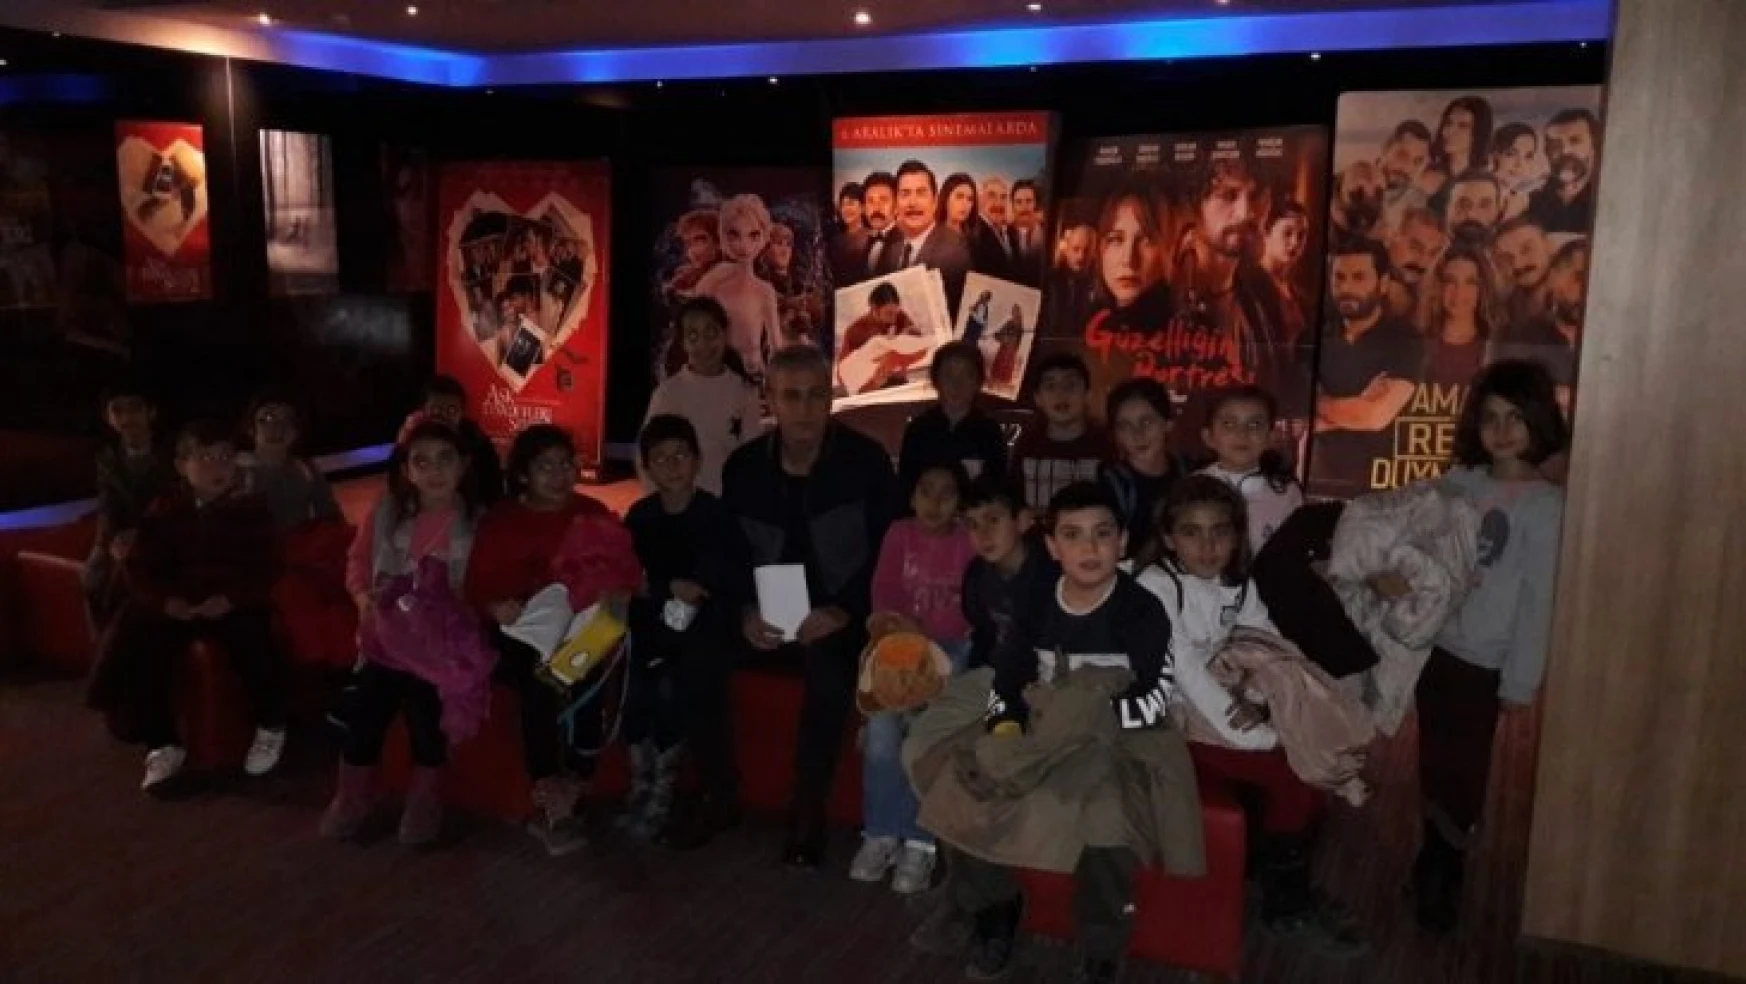 Arguvanlı çocuklar sinemayla buluşuyor